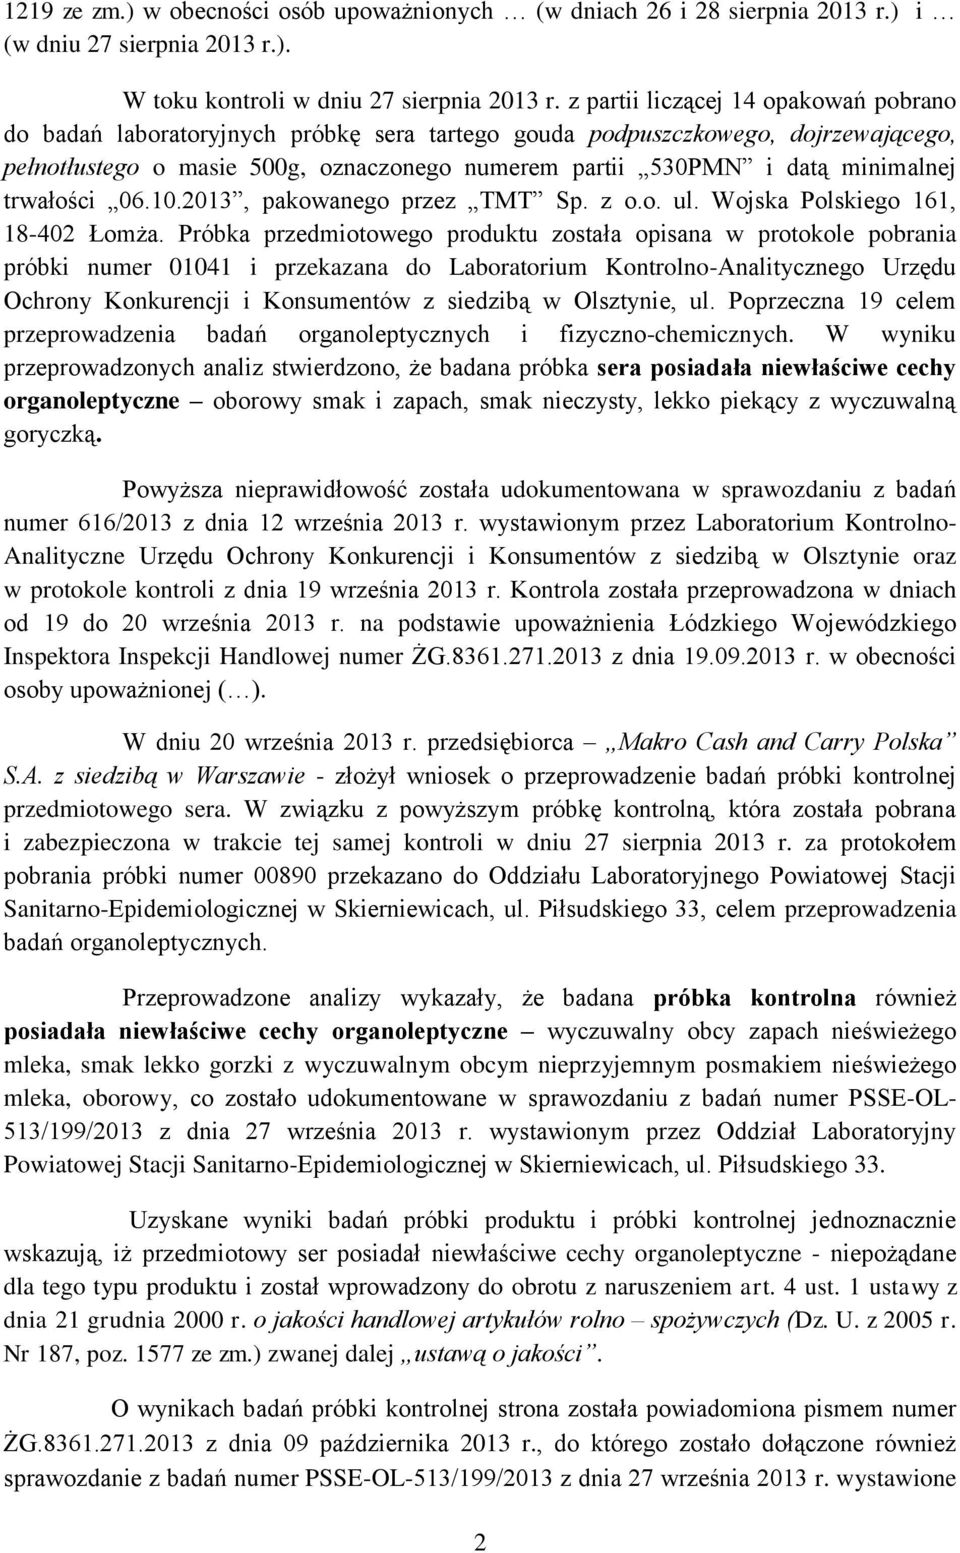 minimalnej trwałości 06.10.2013, pakowanego przez TMT Sp. z o.o. ul. Wojska Polskiego 161, 18-402 Łomża.